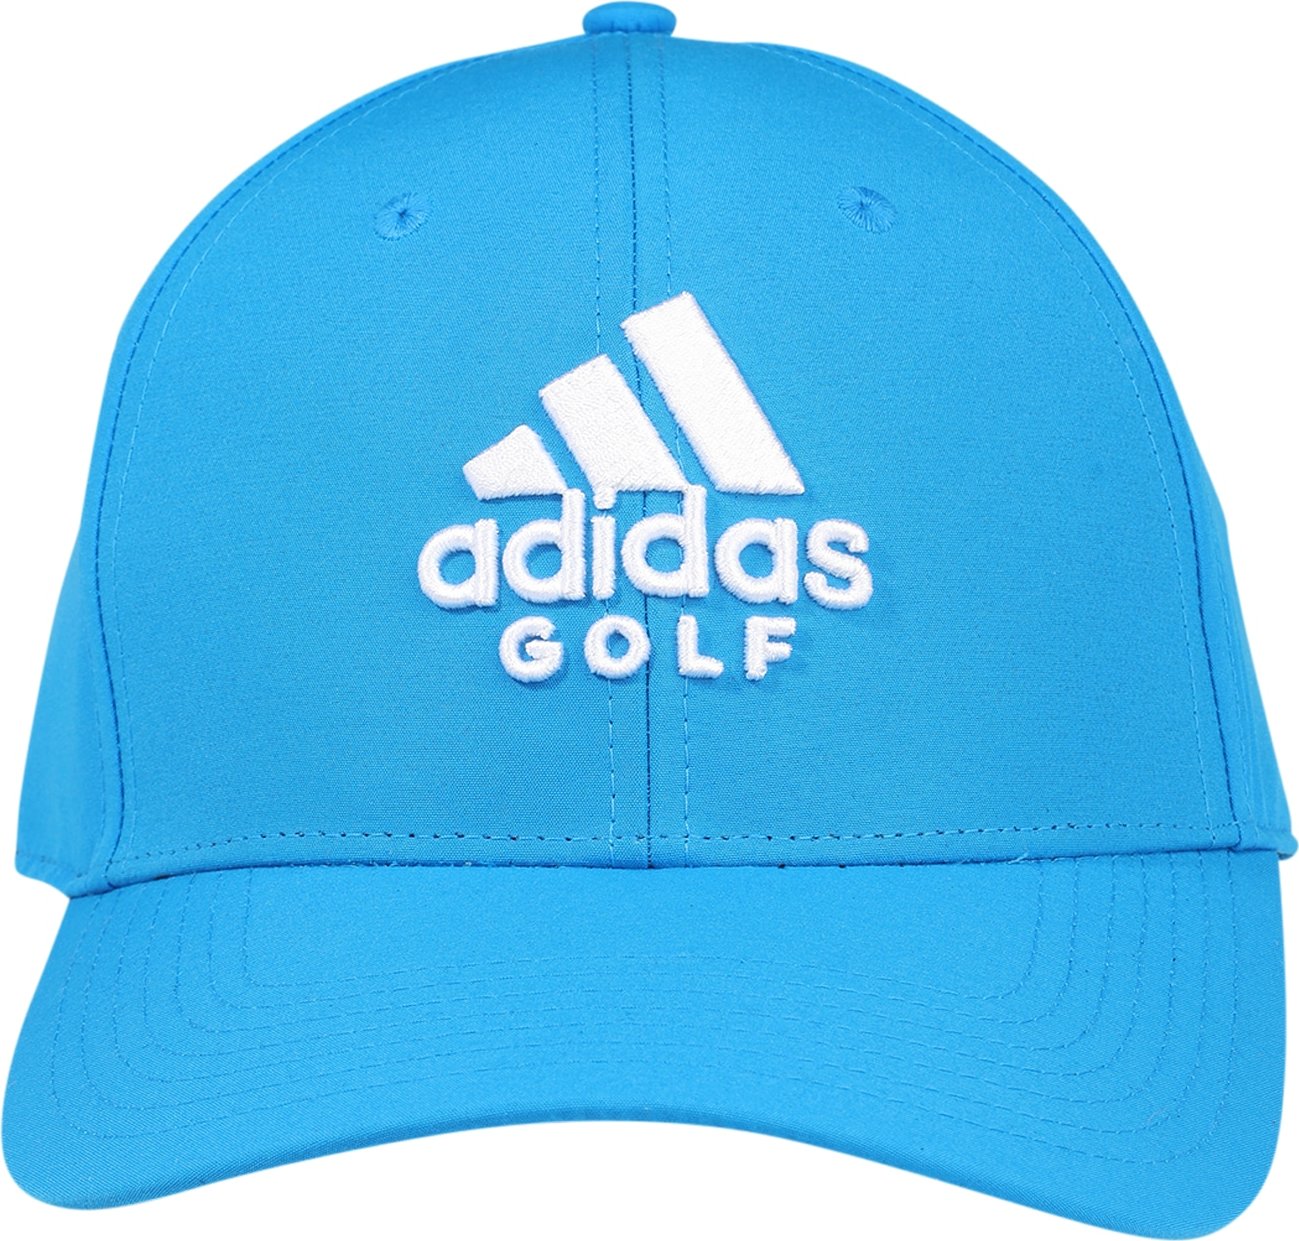 adidas Golf Sportovní kšiltovka azurová modrá / bílá